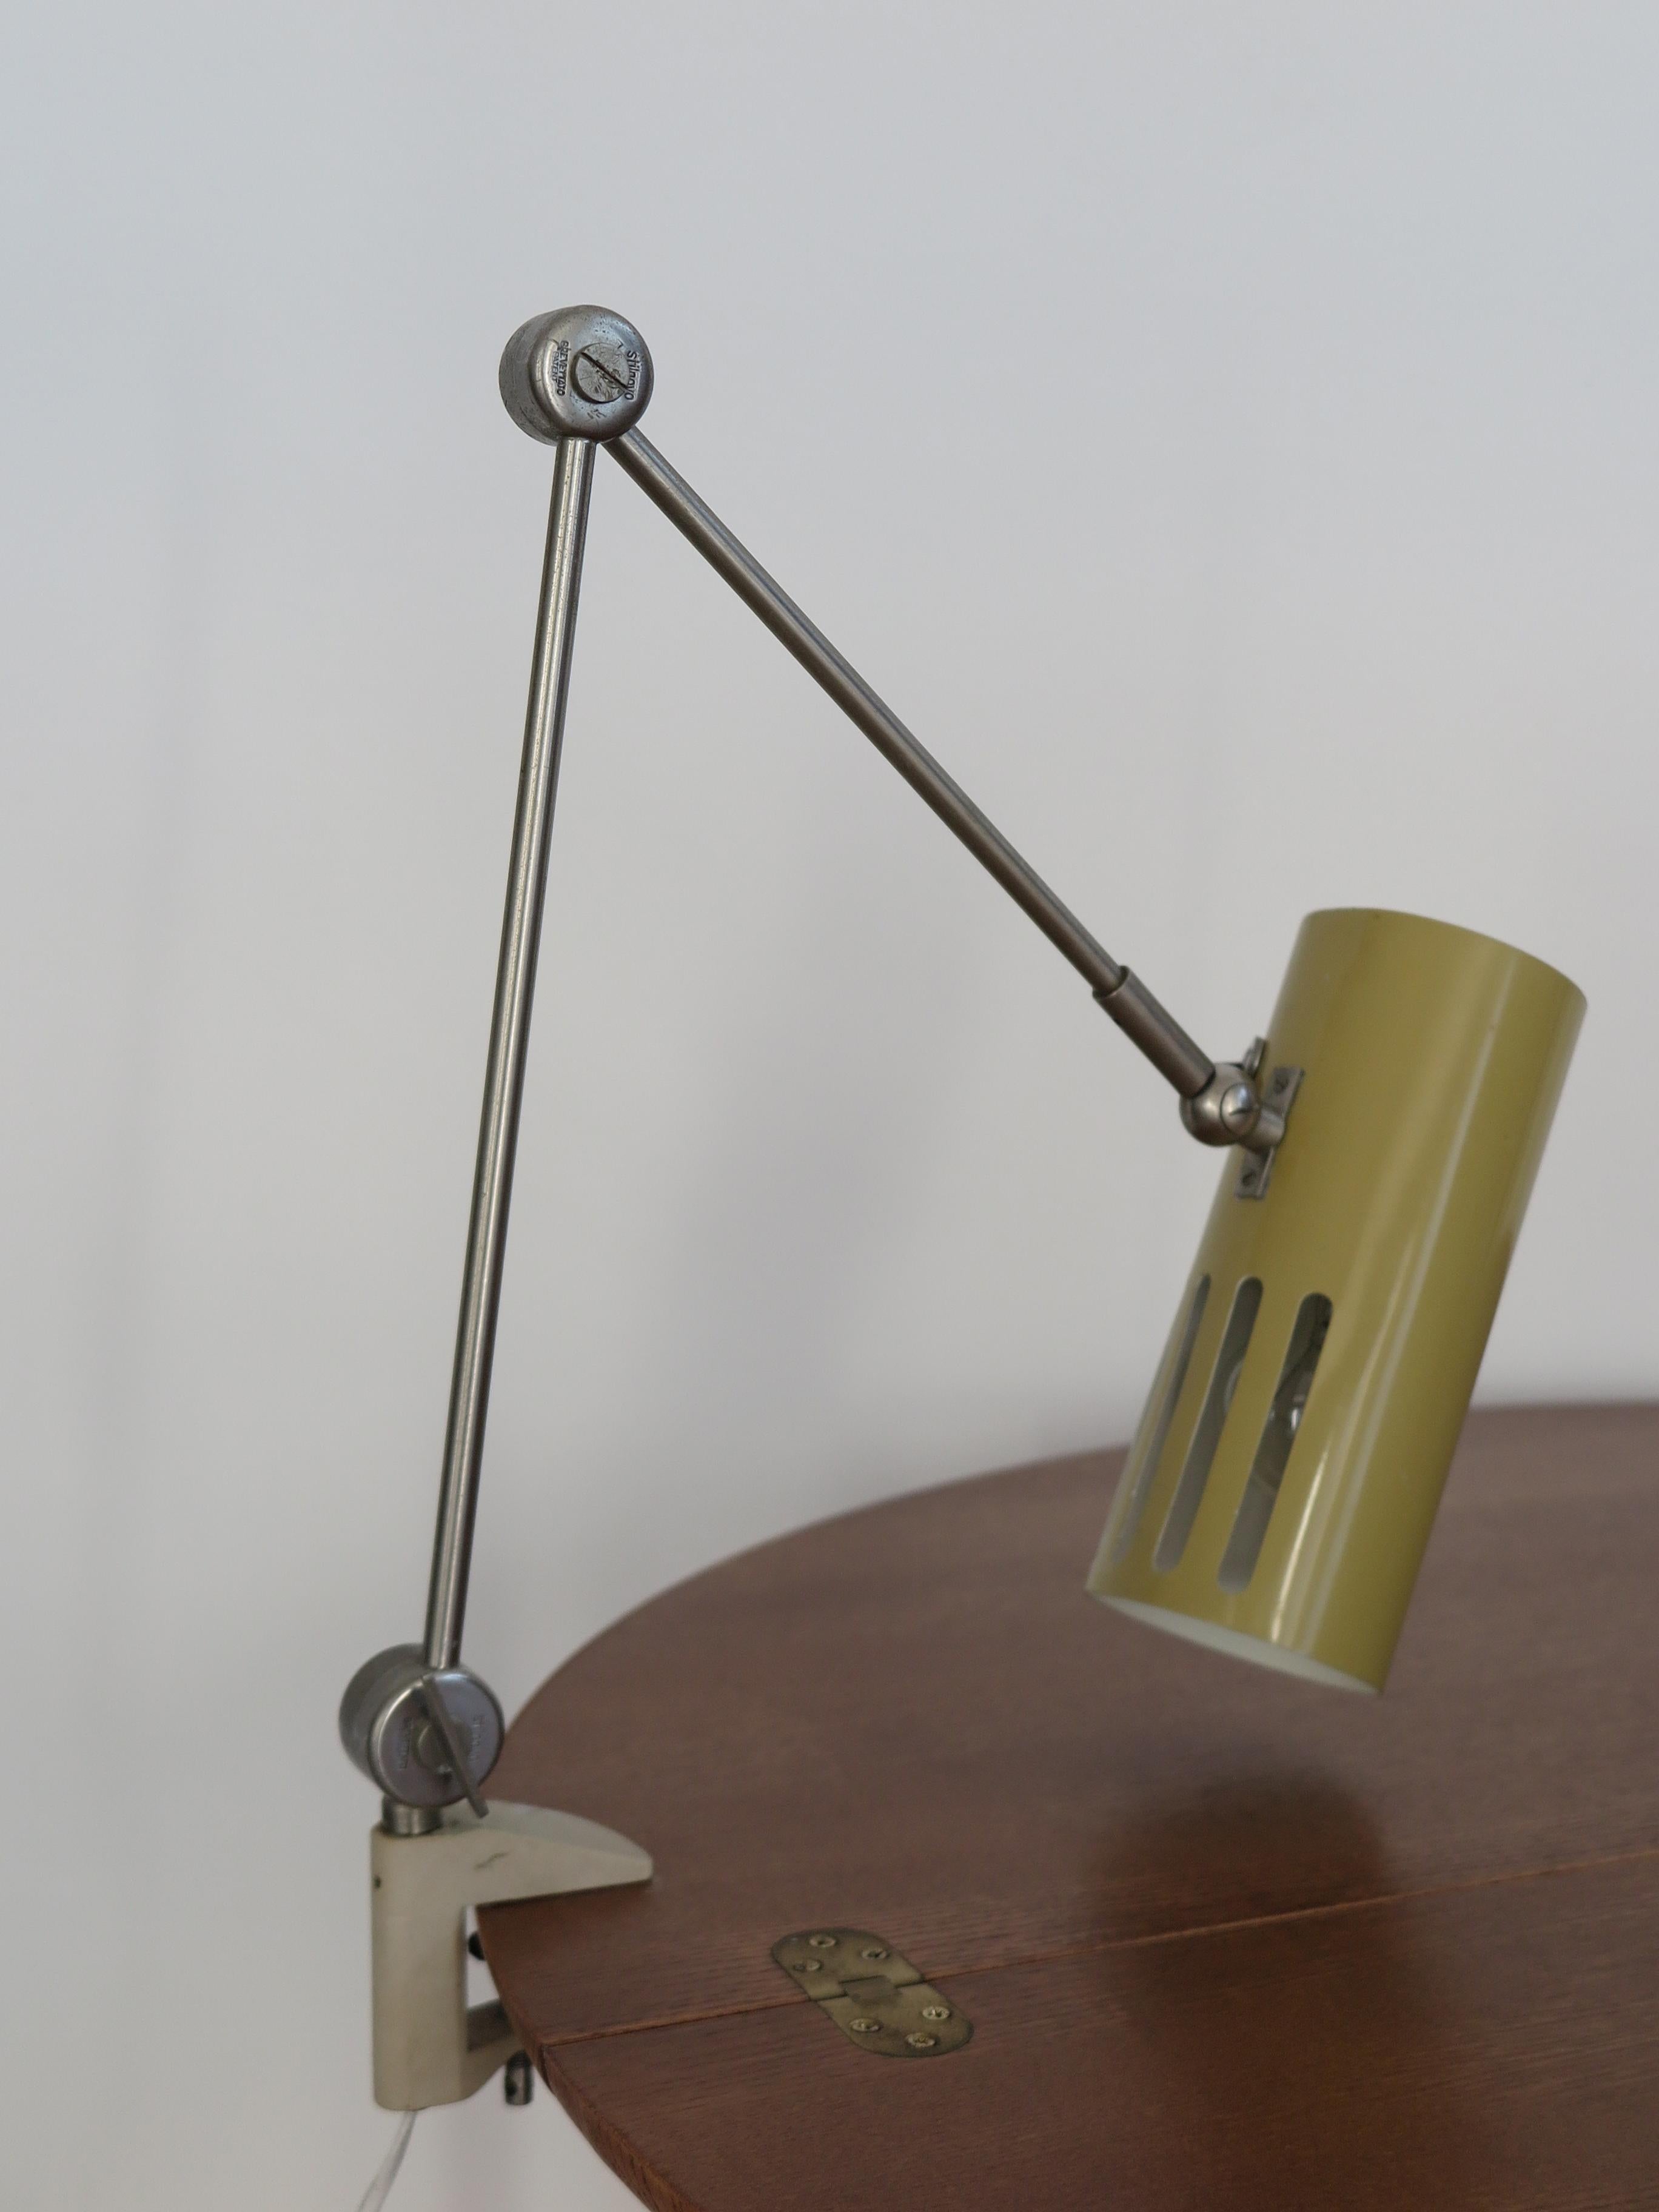 Italian Stilnovo Midcentury Modern Metal Clamp Table Lamp 1950s For Sale 7